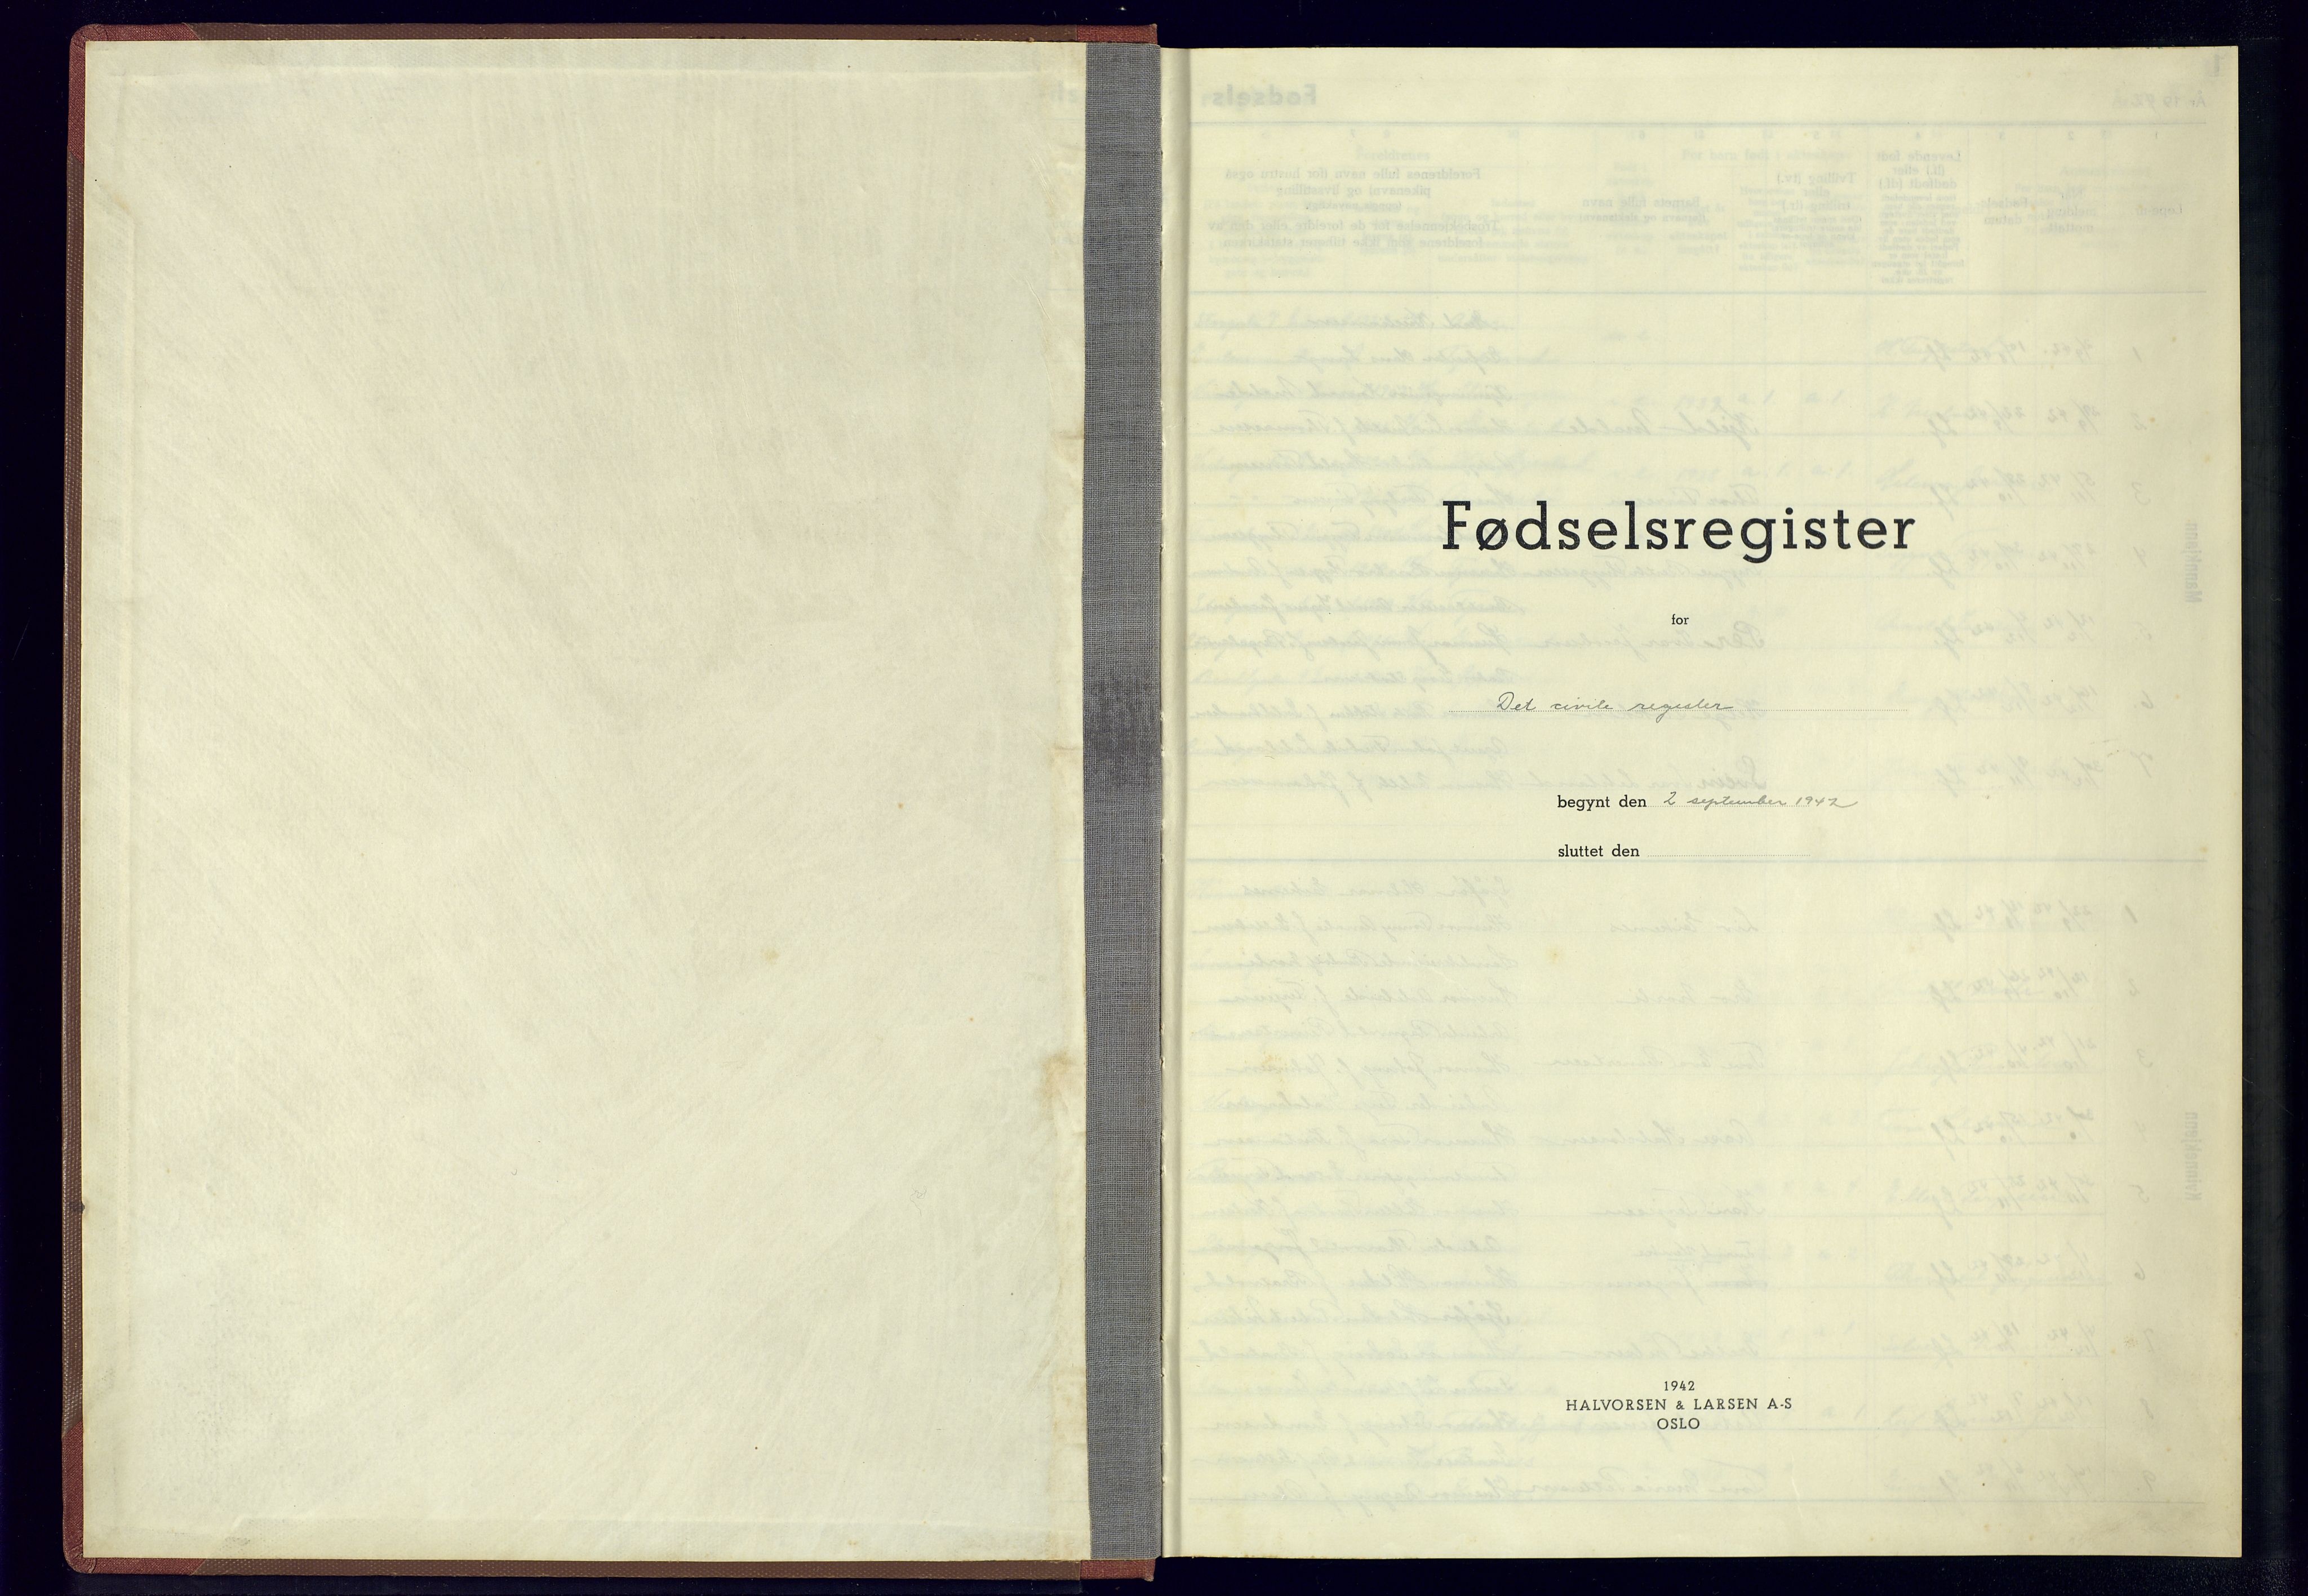 Grimstad sokneprestkontor, SAK/1111-0017/J/Jb/L0001: Birth register no. II.6.1, 1942-1945